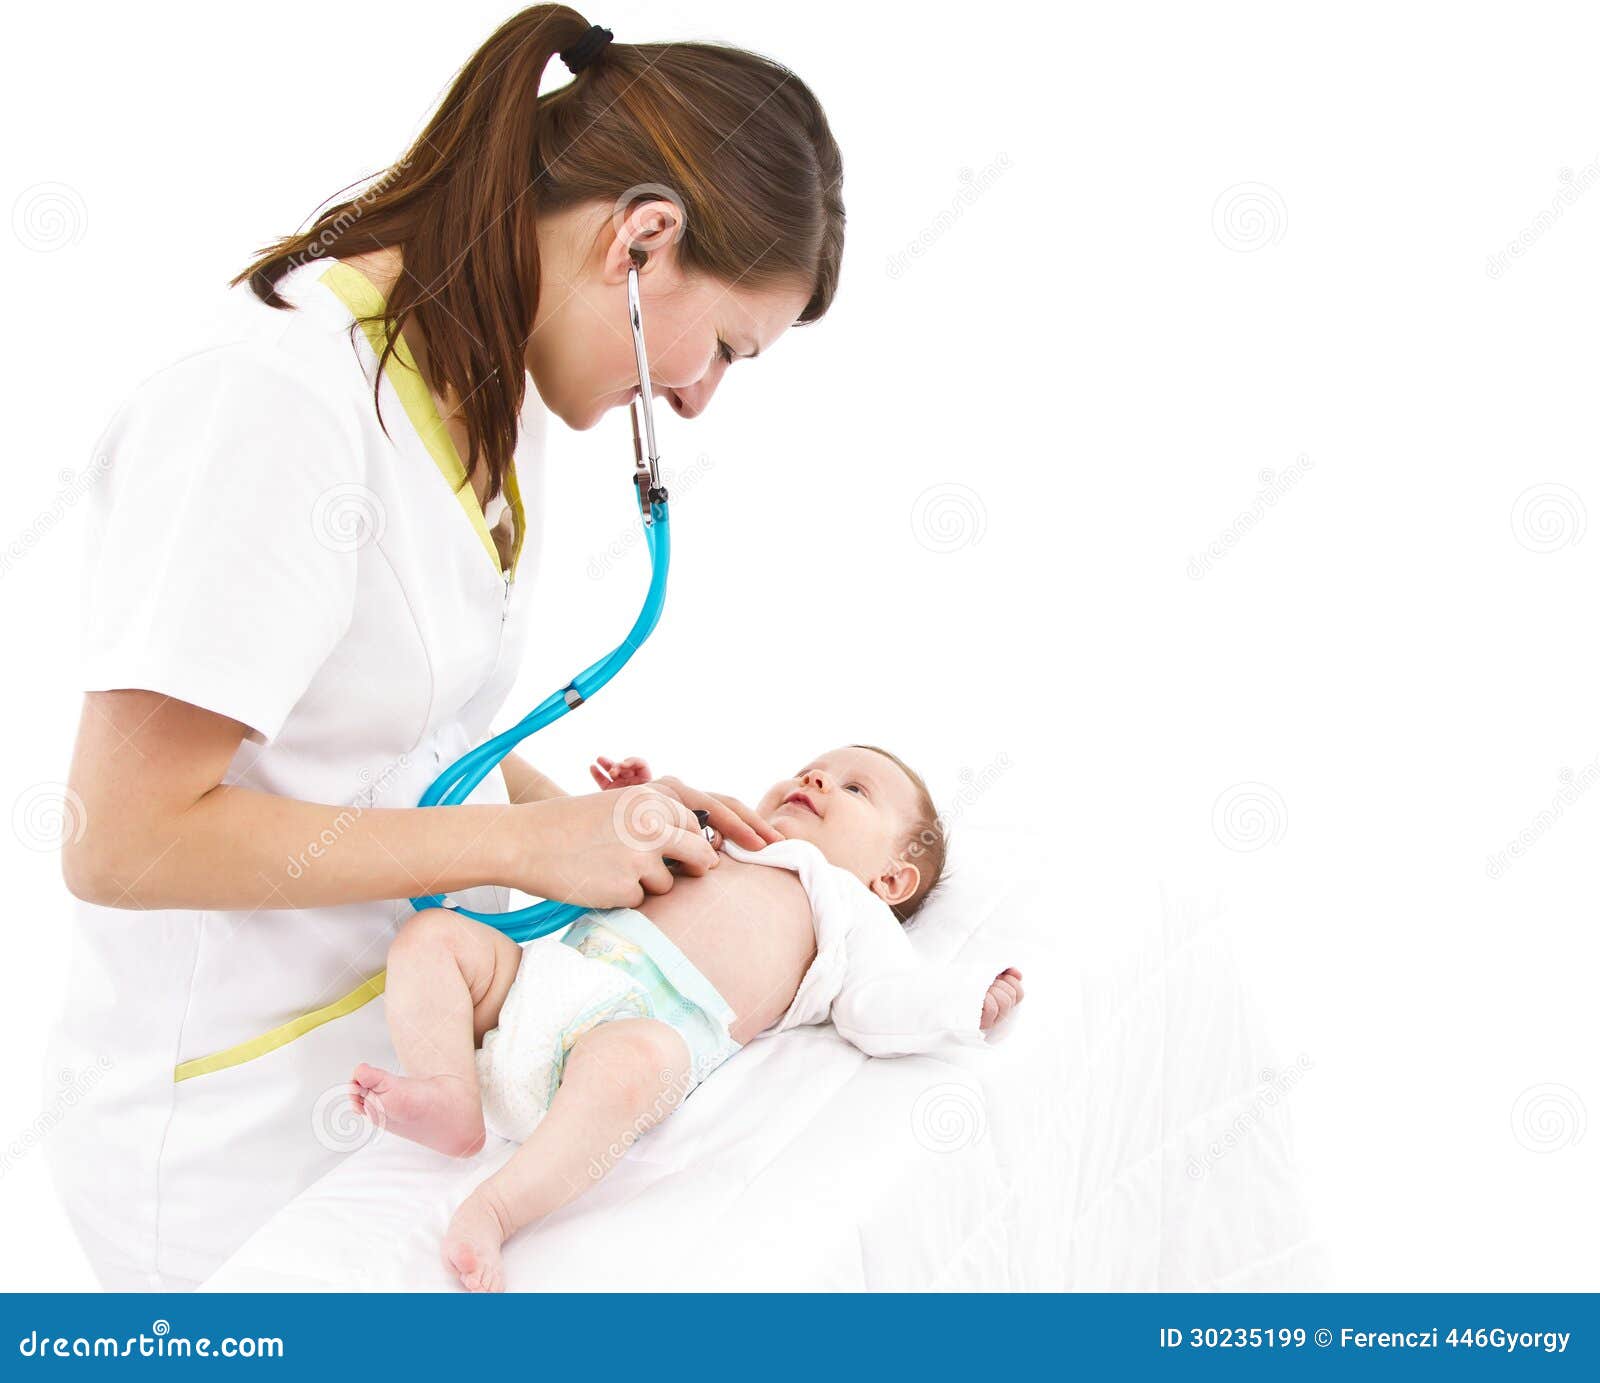 Первые врачи новорожденного. Осмотр новорожденного педиатром. Патронаж медицинской сестры. Патронажная медсестра для новорожденных. Патронаж медсестры к новорожденному.